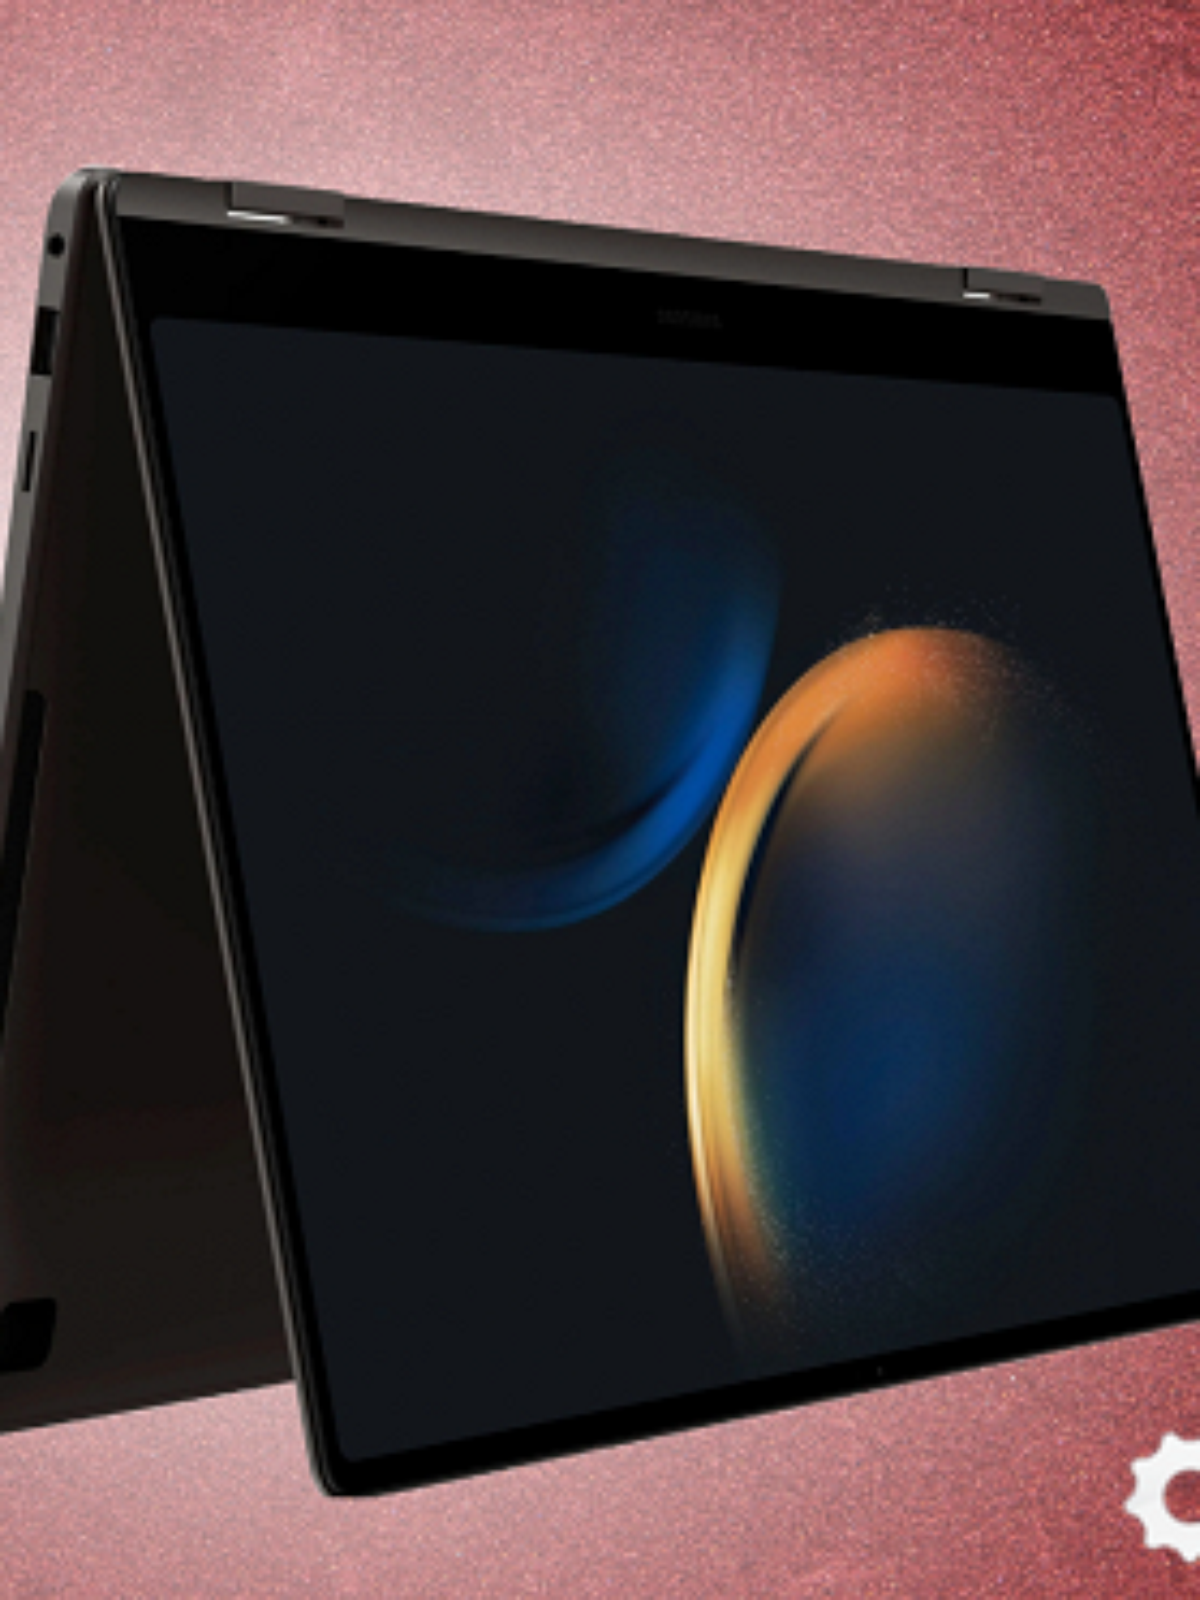 Notebook ou tablet? Os dois! Conheça o Samsung Galaxy Book3 360 - TecMundo